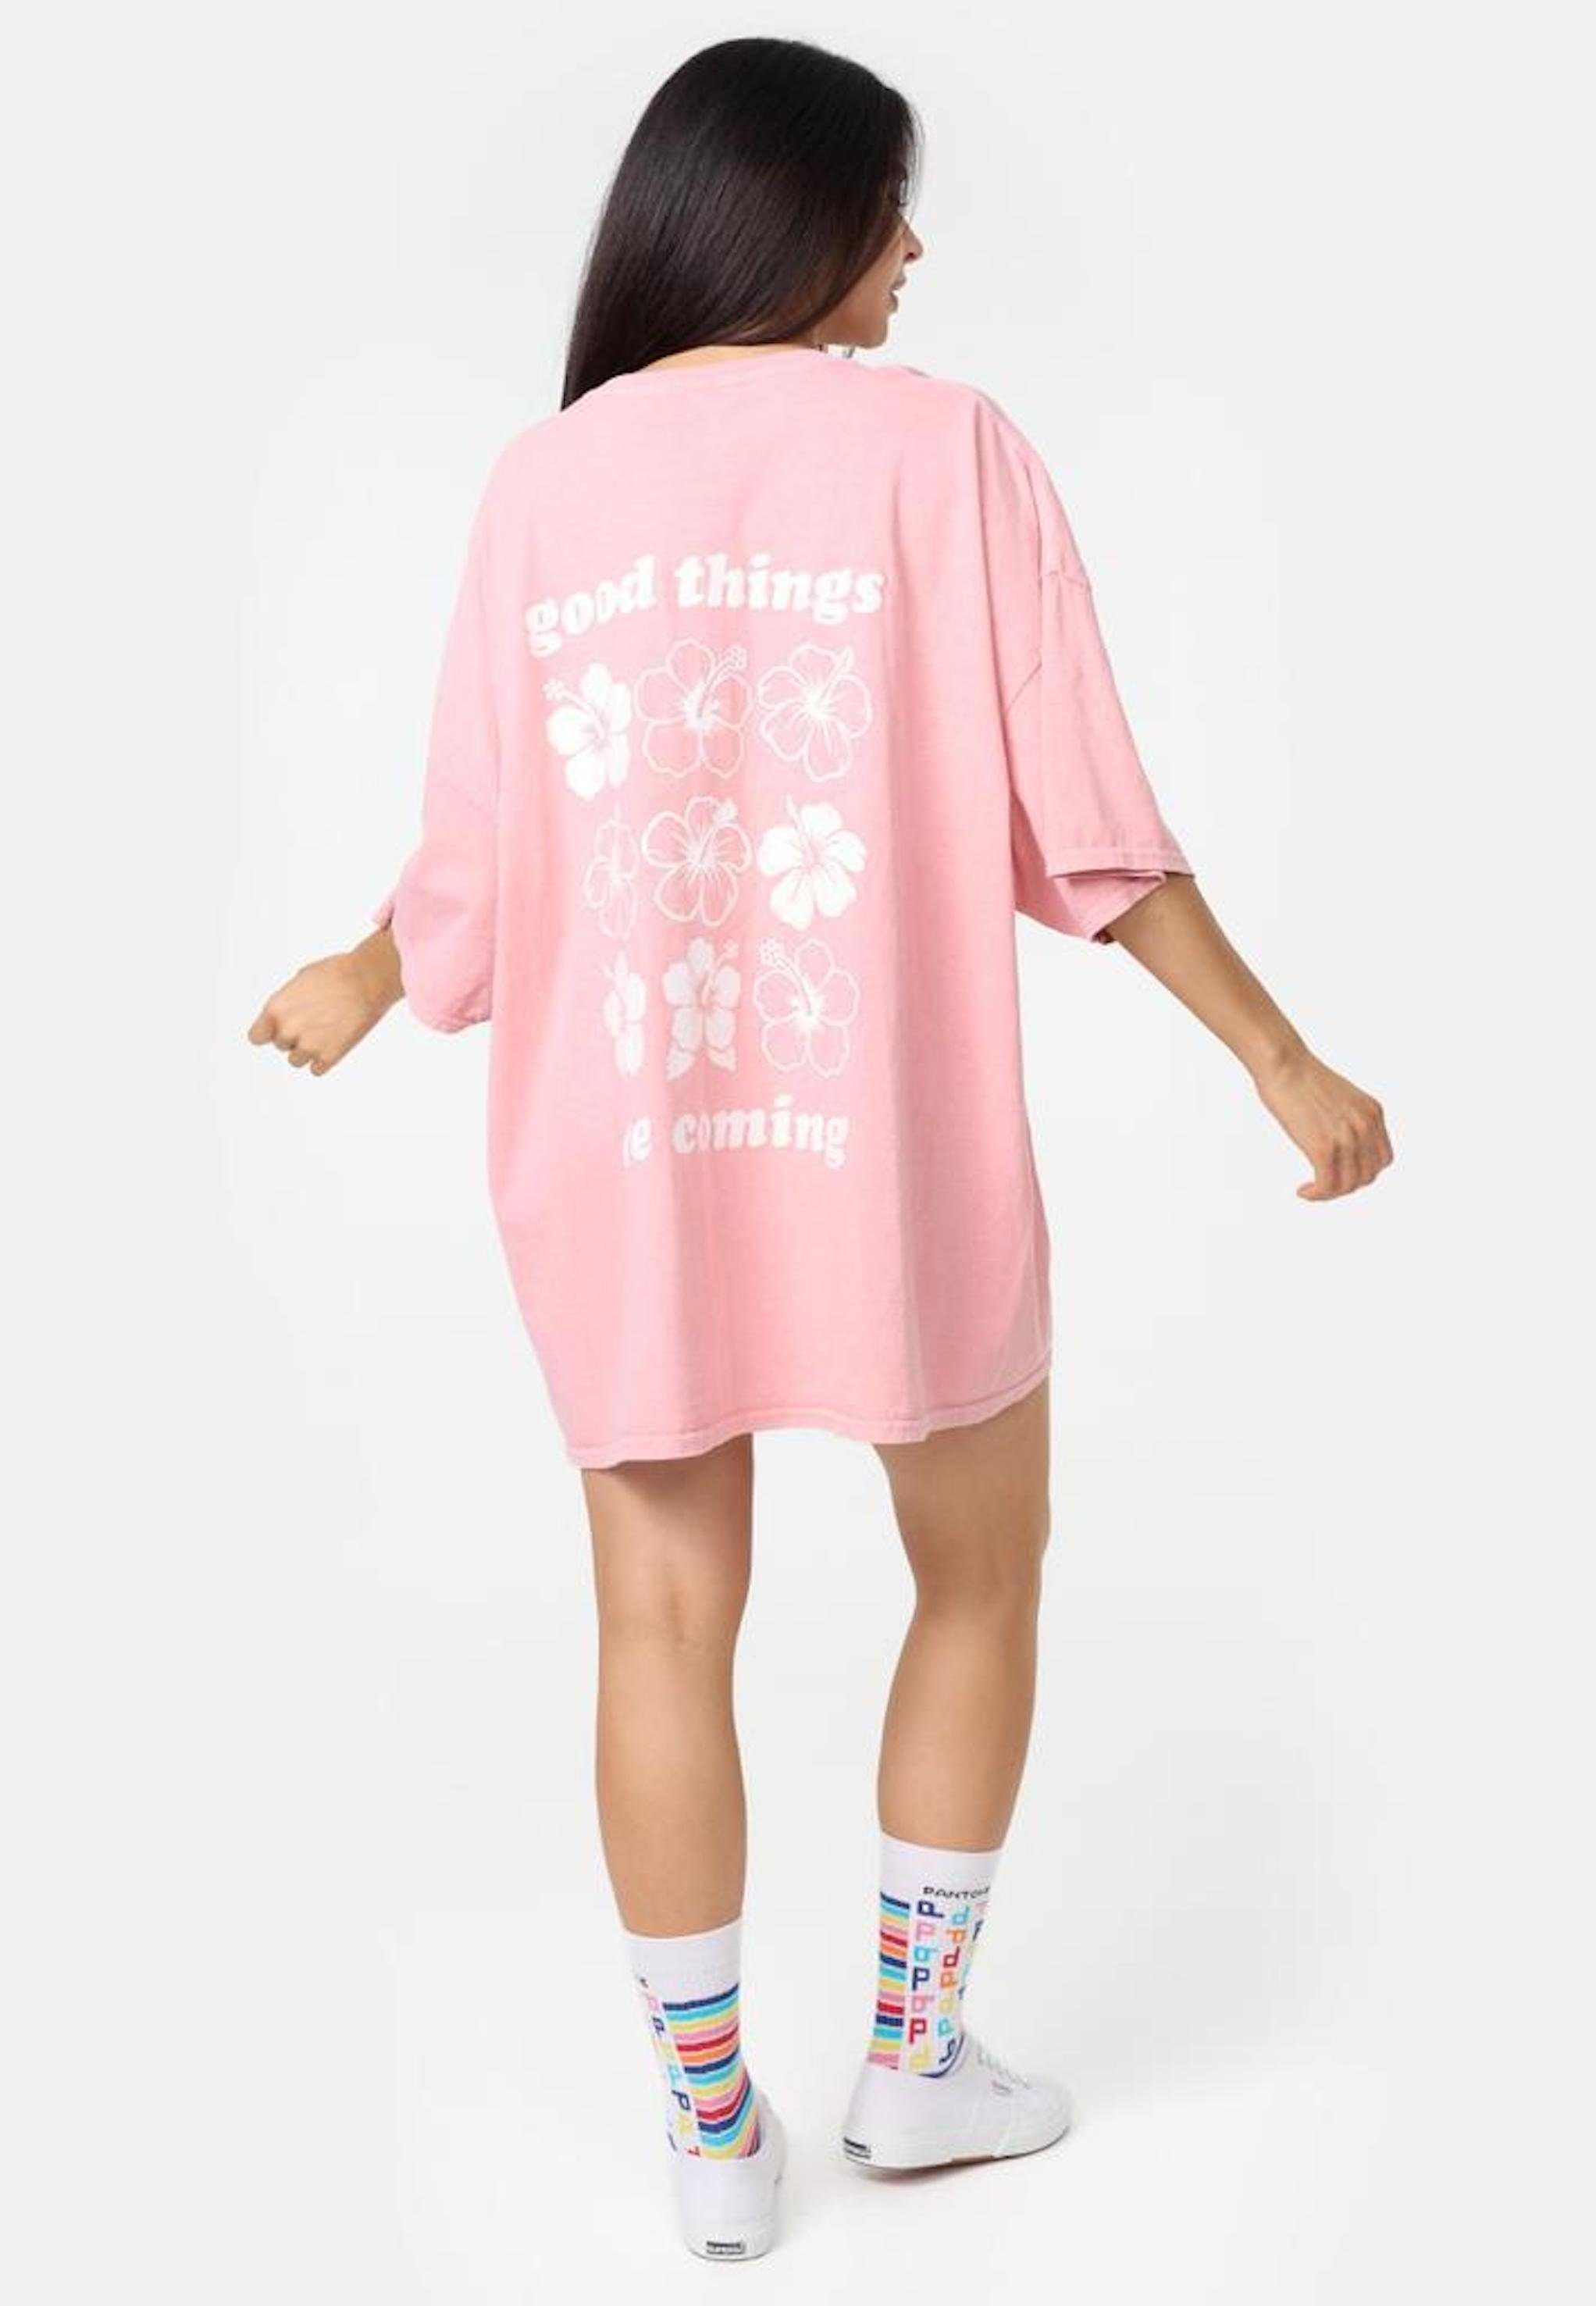 Worldclassca T-Shirt Worldclassca Oversized Print Flower T-Shirt lang Tee Sommer Oberteil Rosa